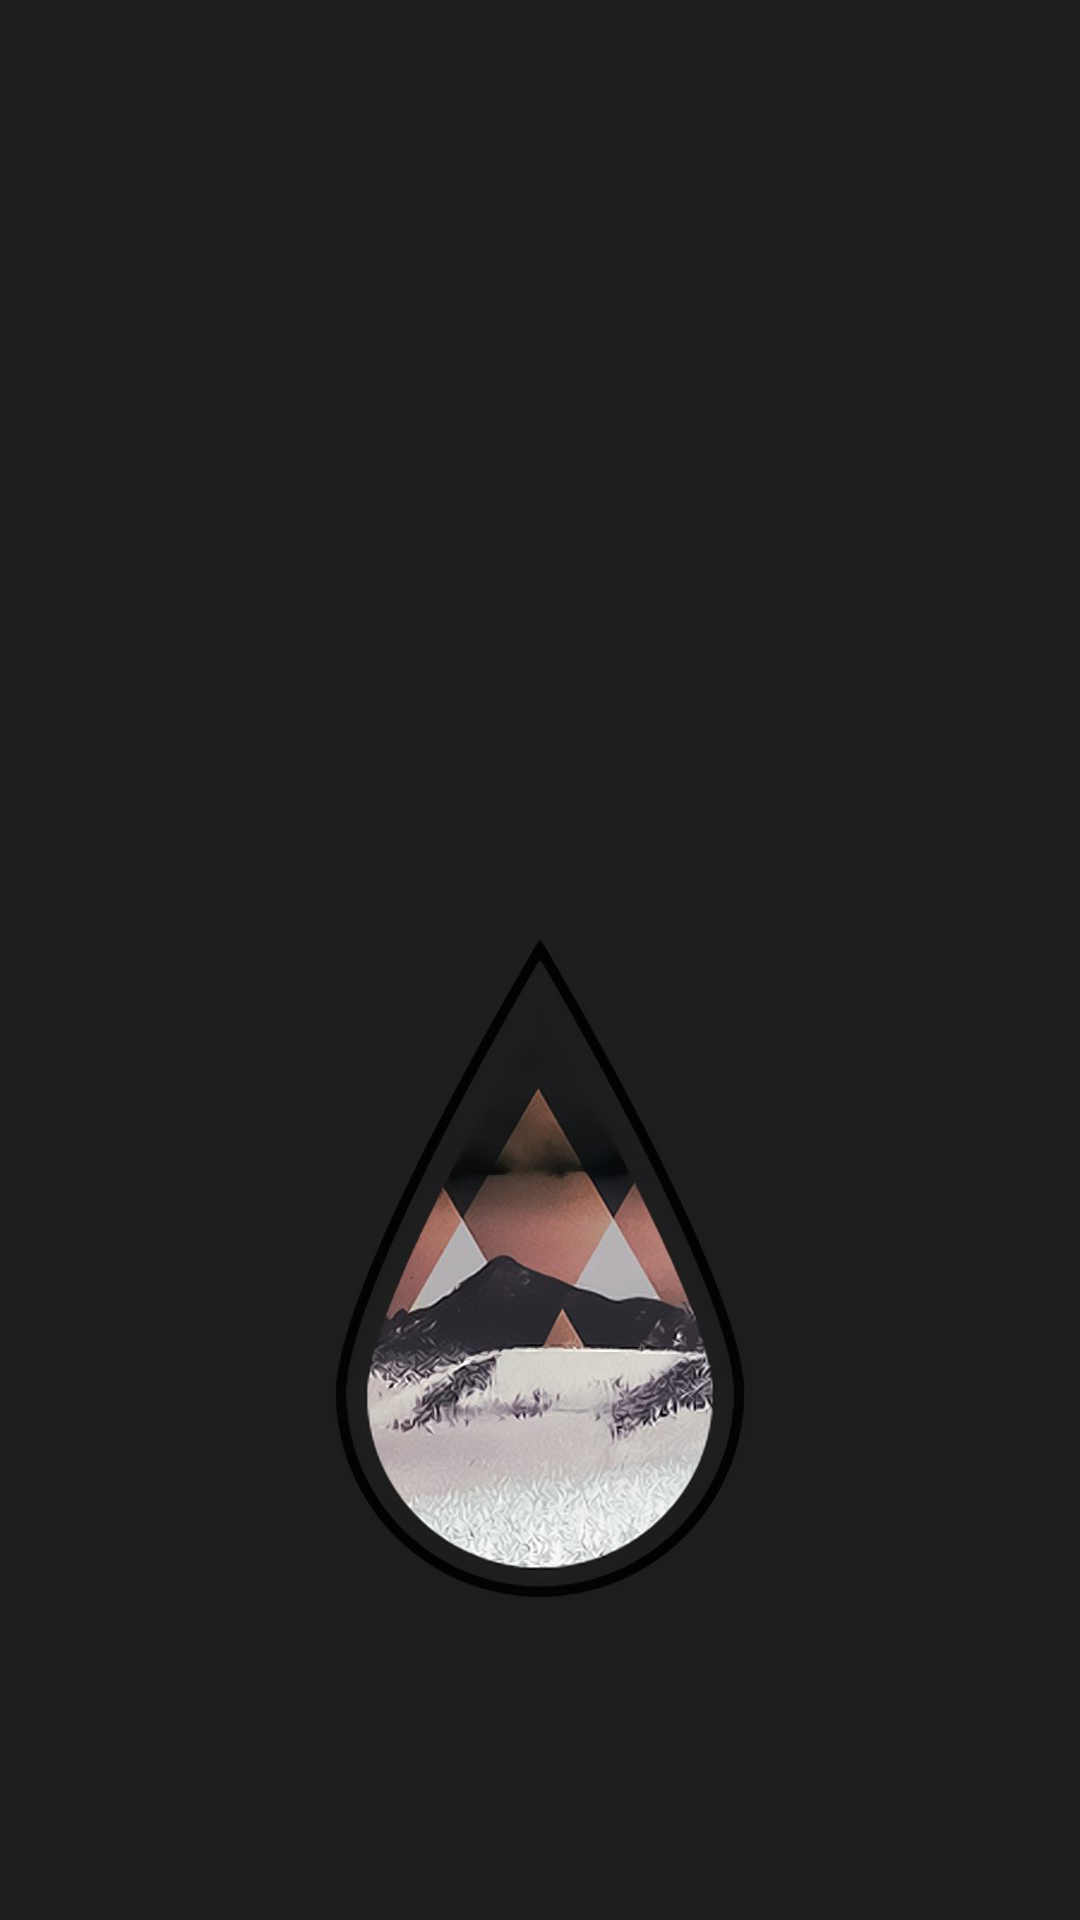 Dark Version Of Teardrop Wallpaper - Boat , HD Wallpaper & Backgrounds